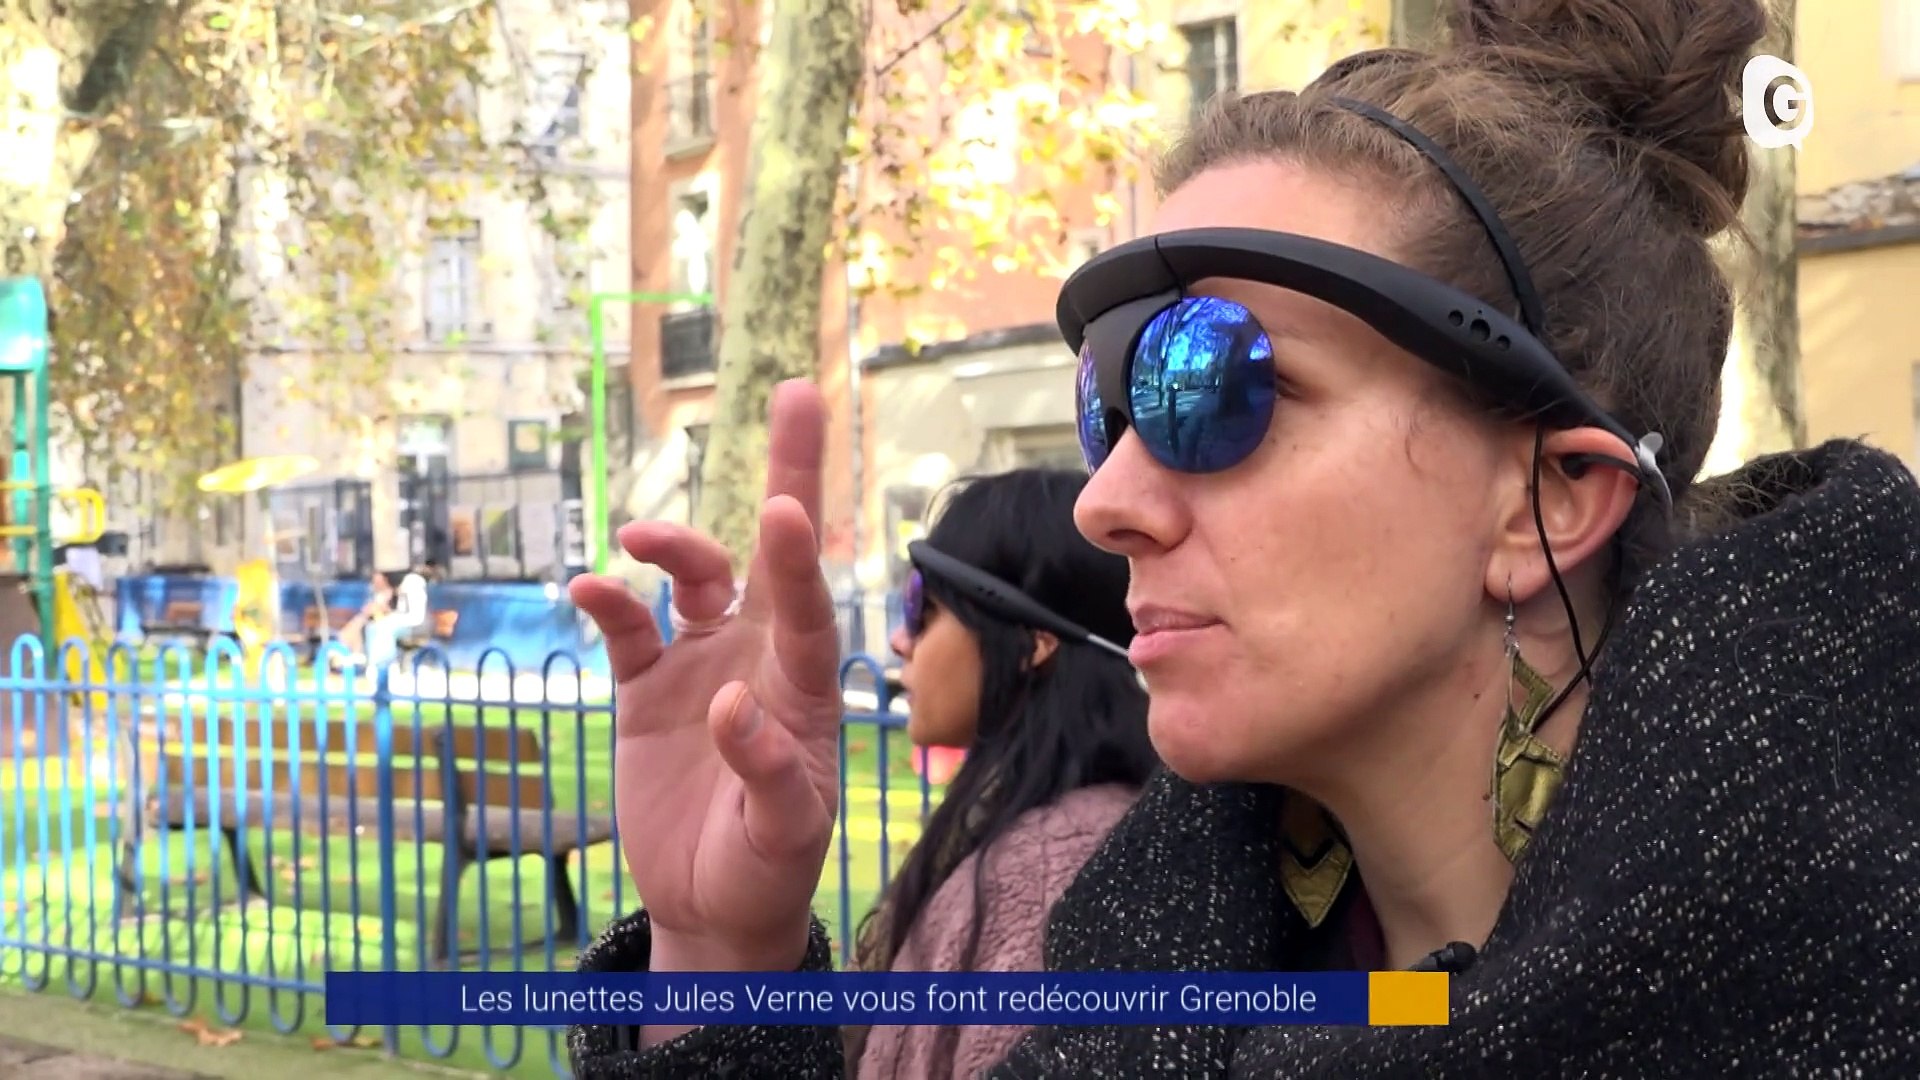 Reportage - Les lunettes Jules Verne vous font redécouvrir Grenoble - Vidéo  Dailymotion